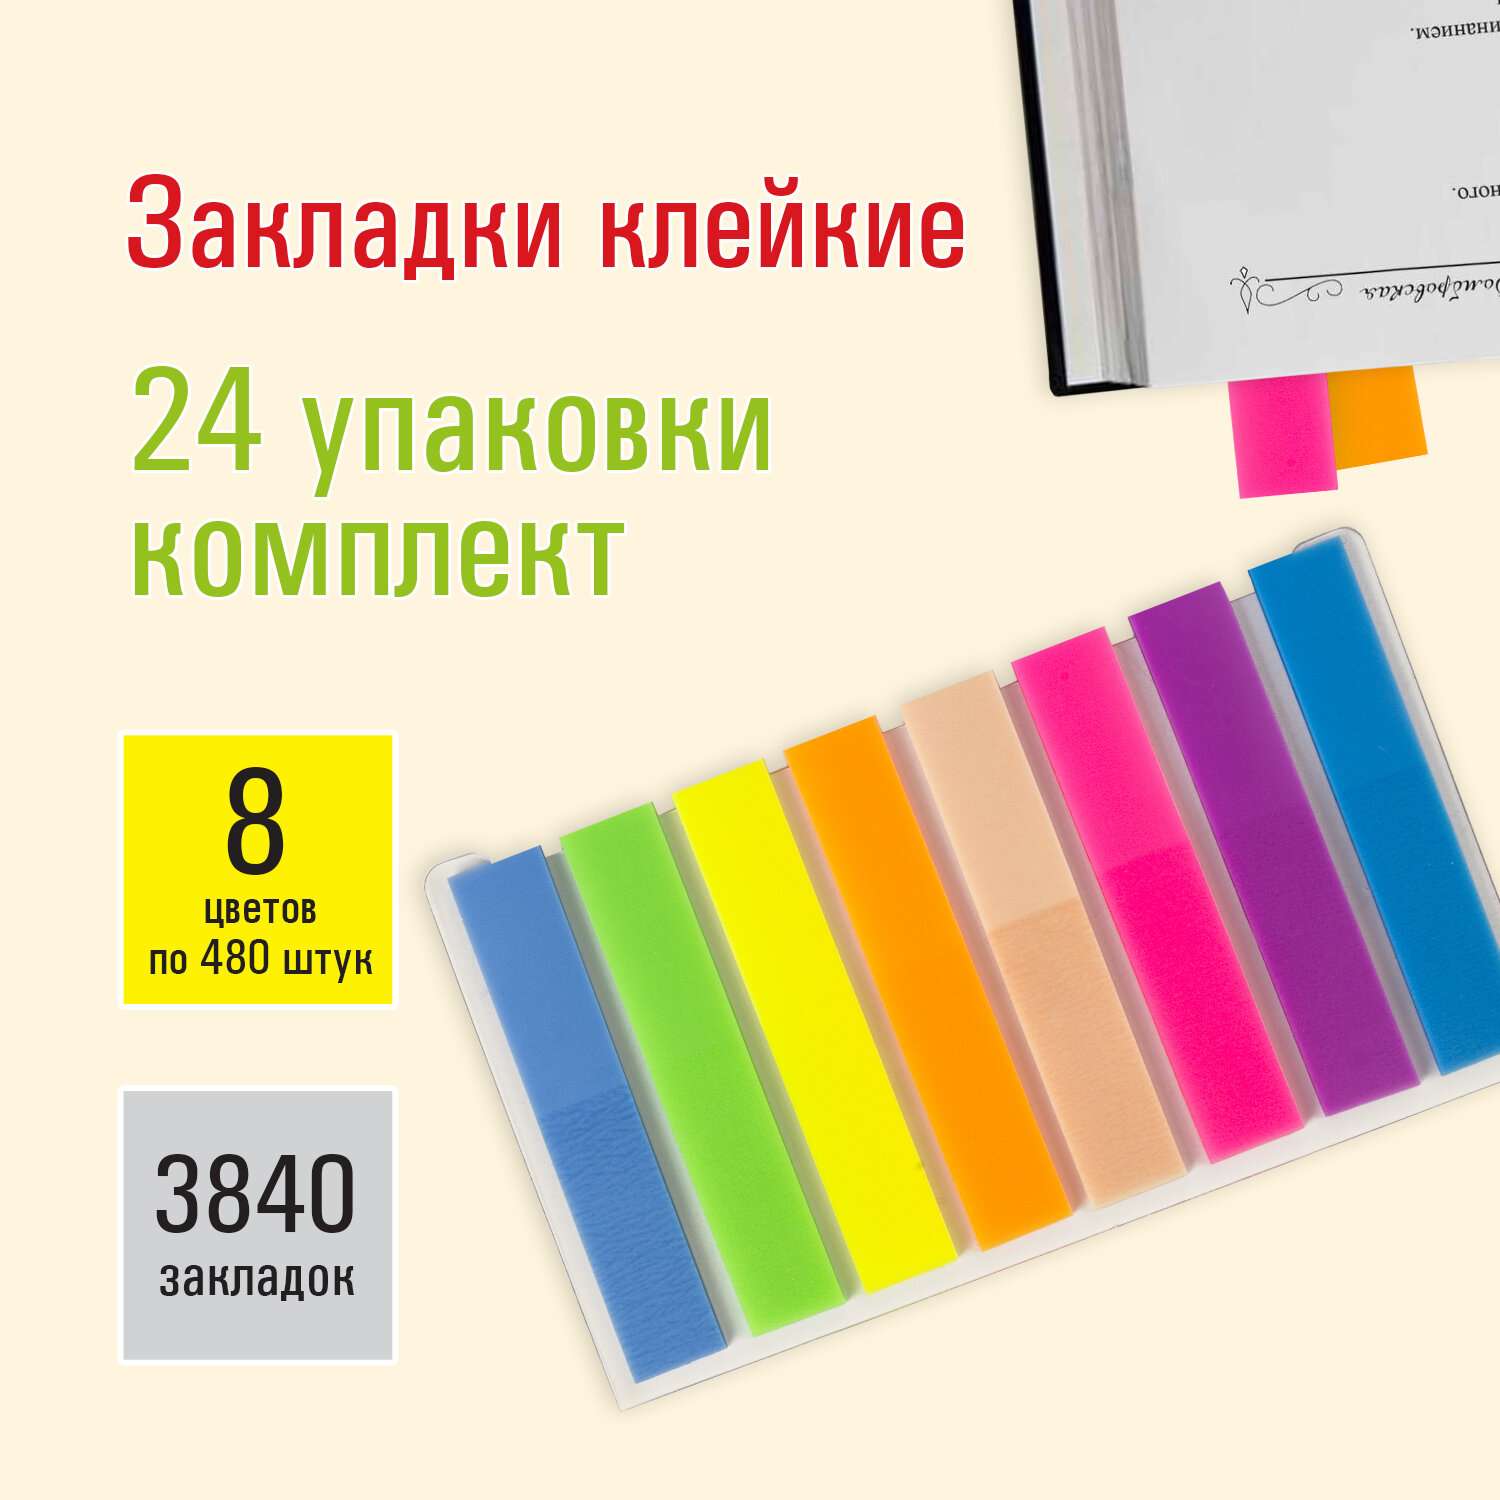 Закладки Staff клейкие 8 цветов по 480 шт комплект 24 упаковки - фото 1